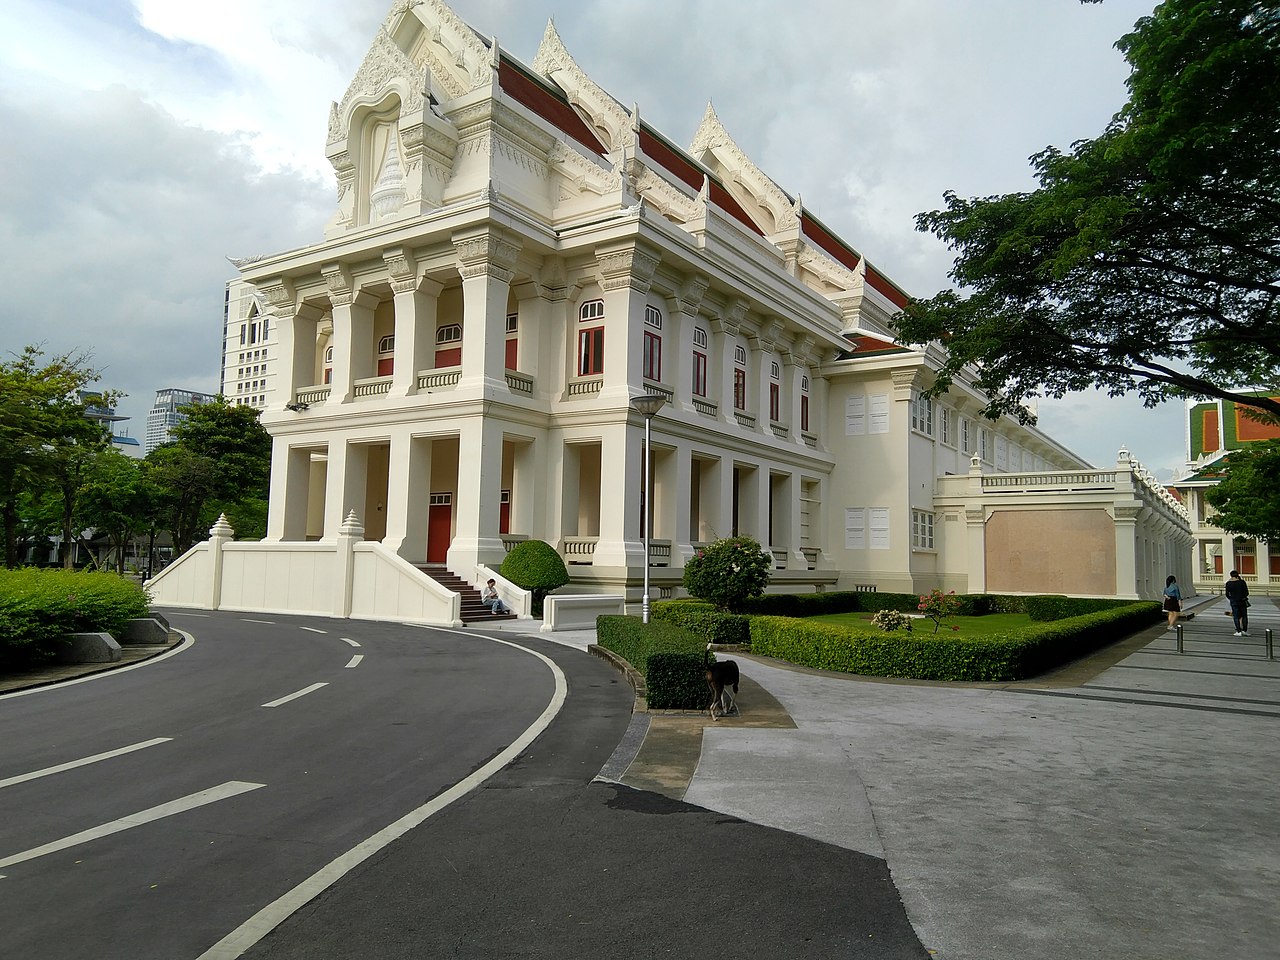 chulalongkorn university